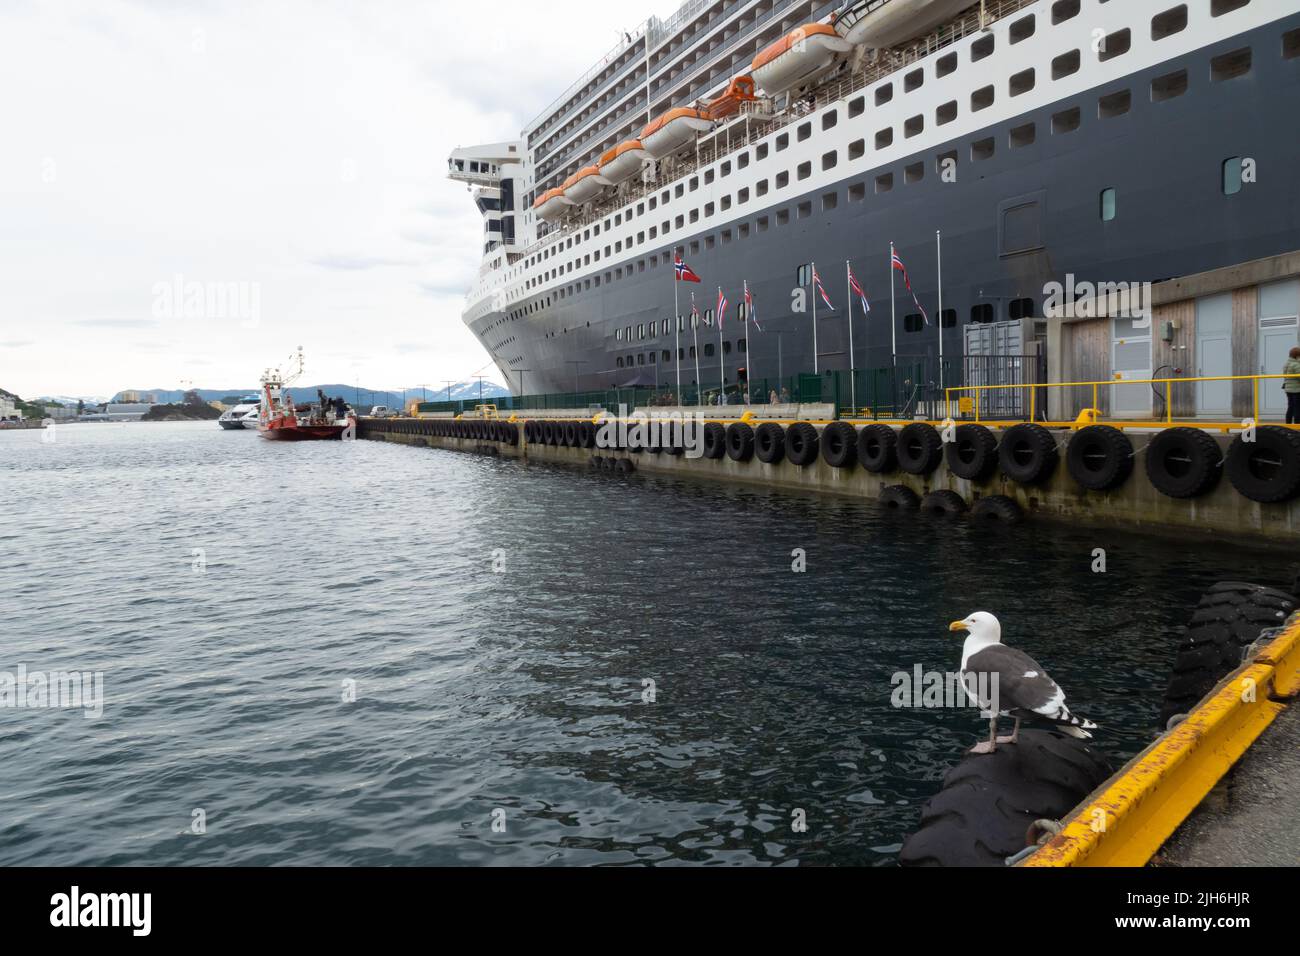 El crucero Cunard Line Queen Mary 2 está atracado en el puerto de Alesund, Noruega. Foto de stock